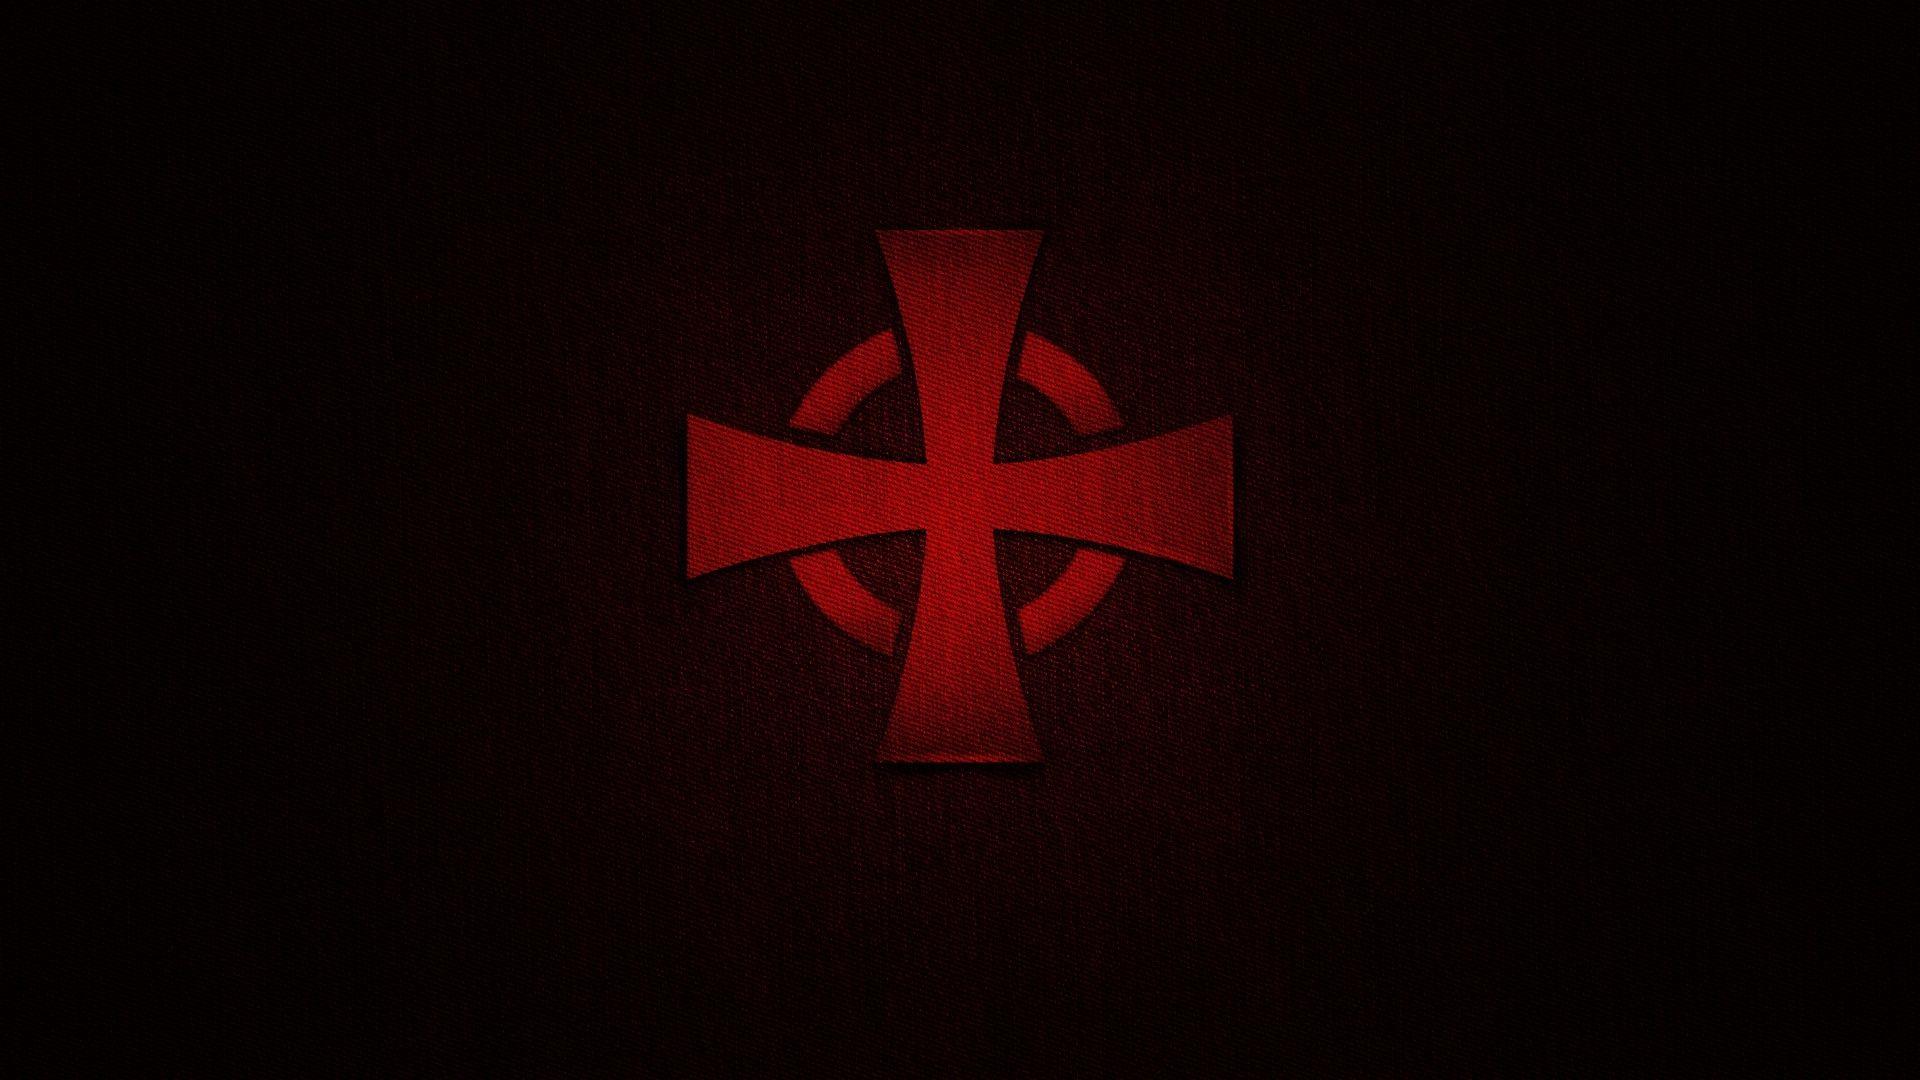 New Knights Templar Cross Wallpaper FULL HD 1920×1080 For PC